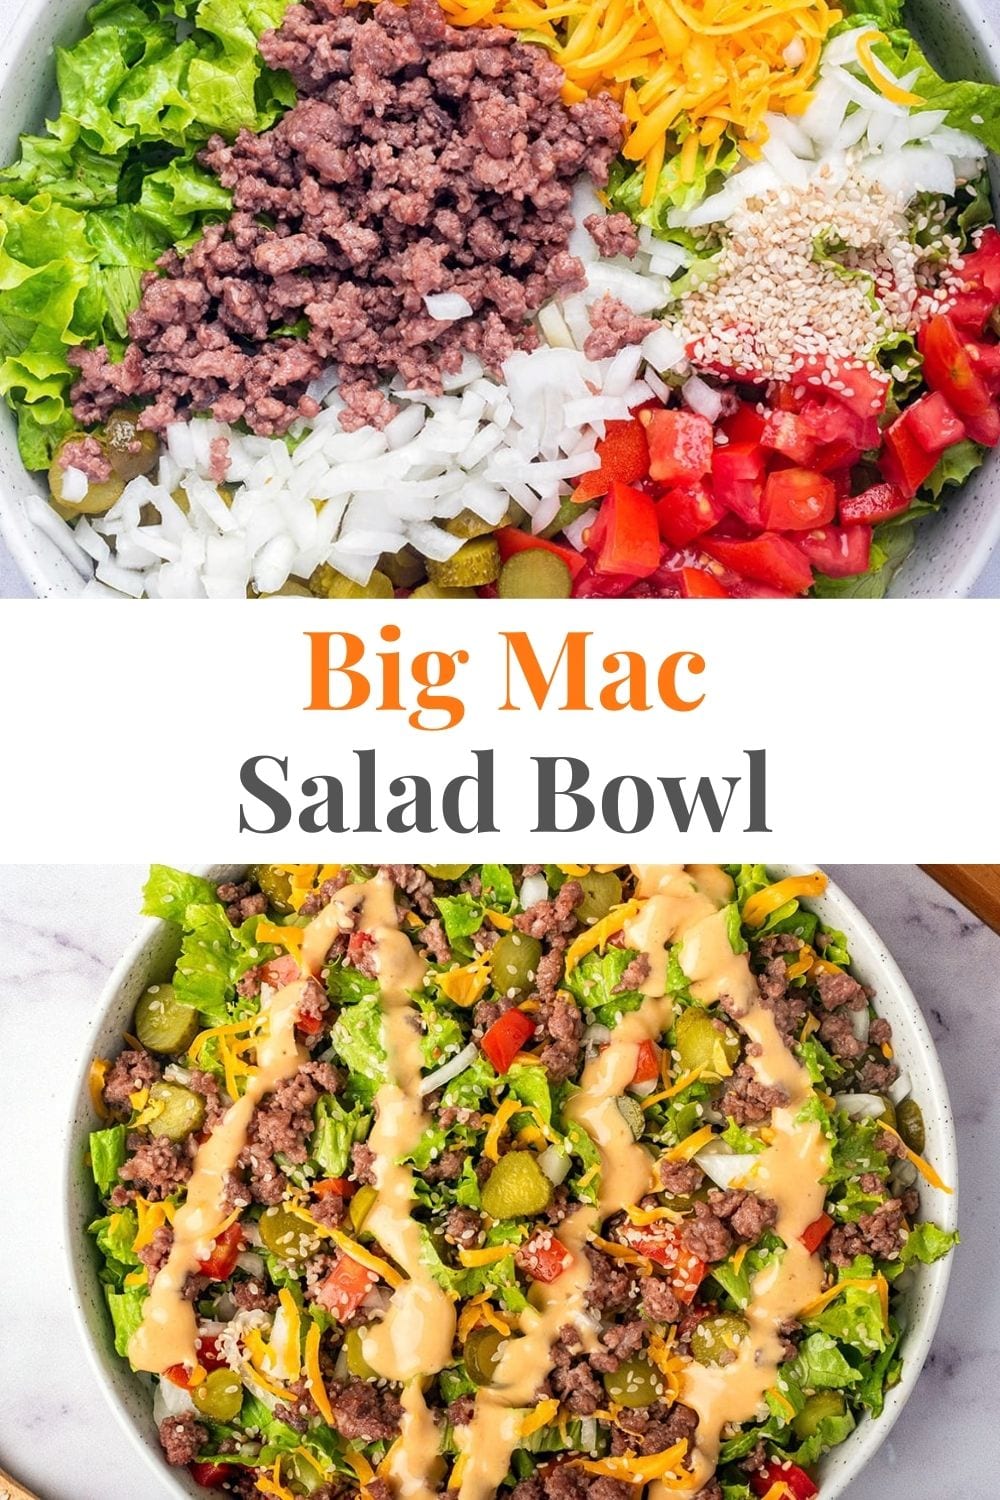 Big Mac Salad Bowl